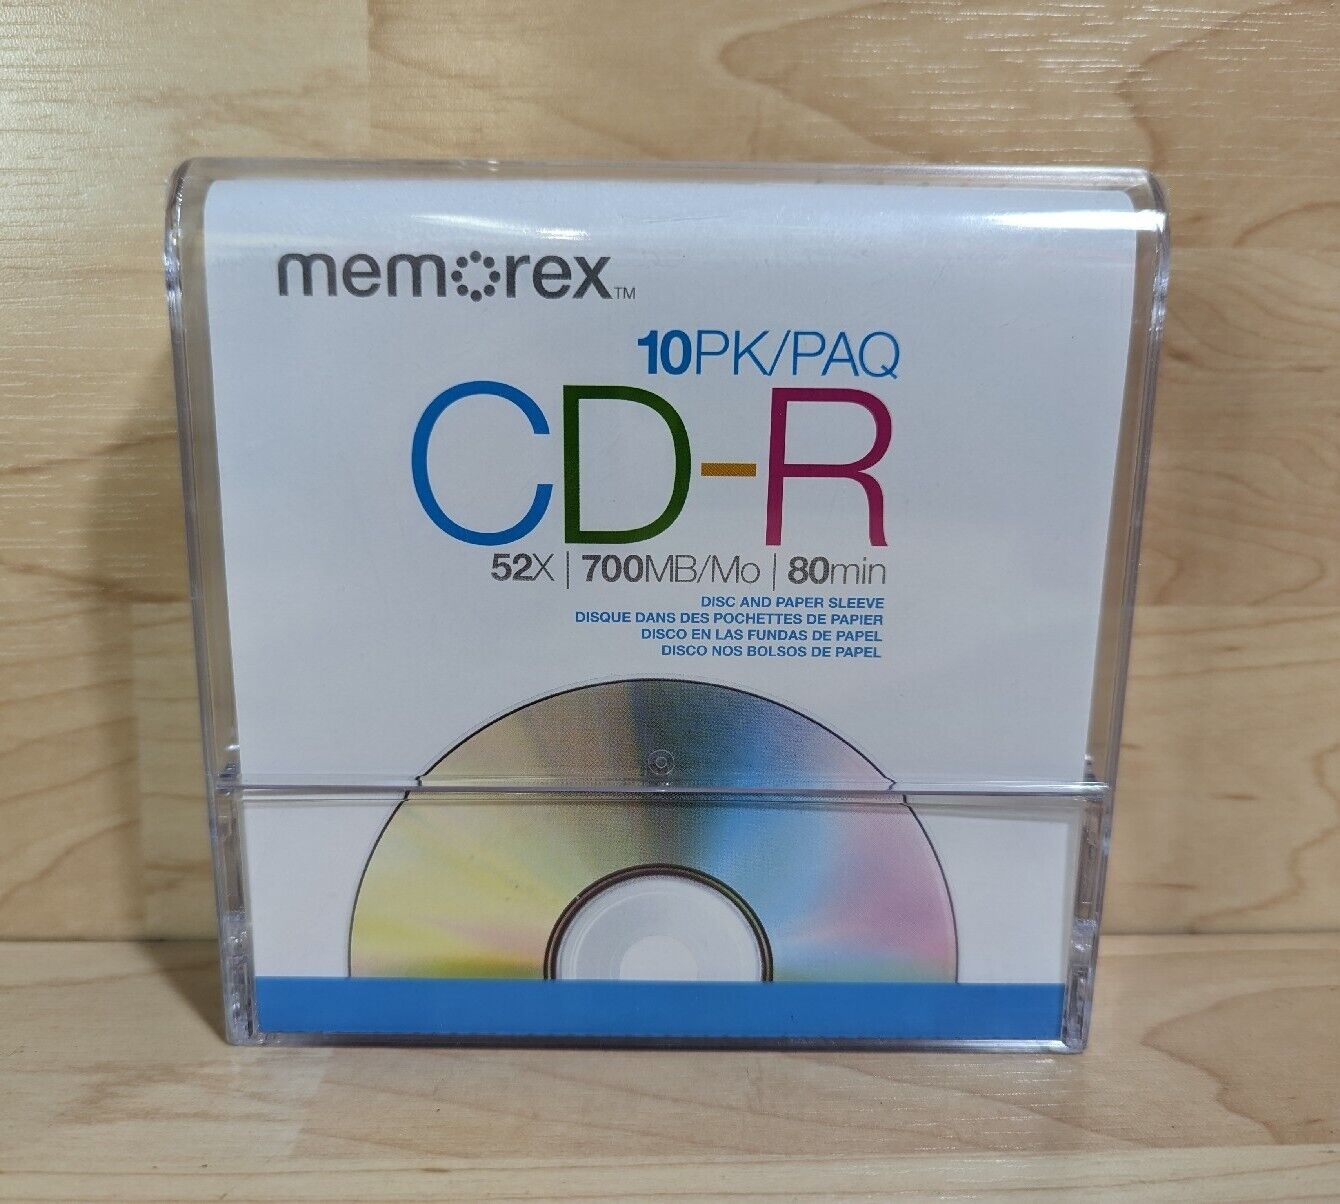 NEW Memorex 10PK CD-R 52X 700MB 80min 10 pack CD-R Discs w/Paper Sleeves